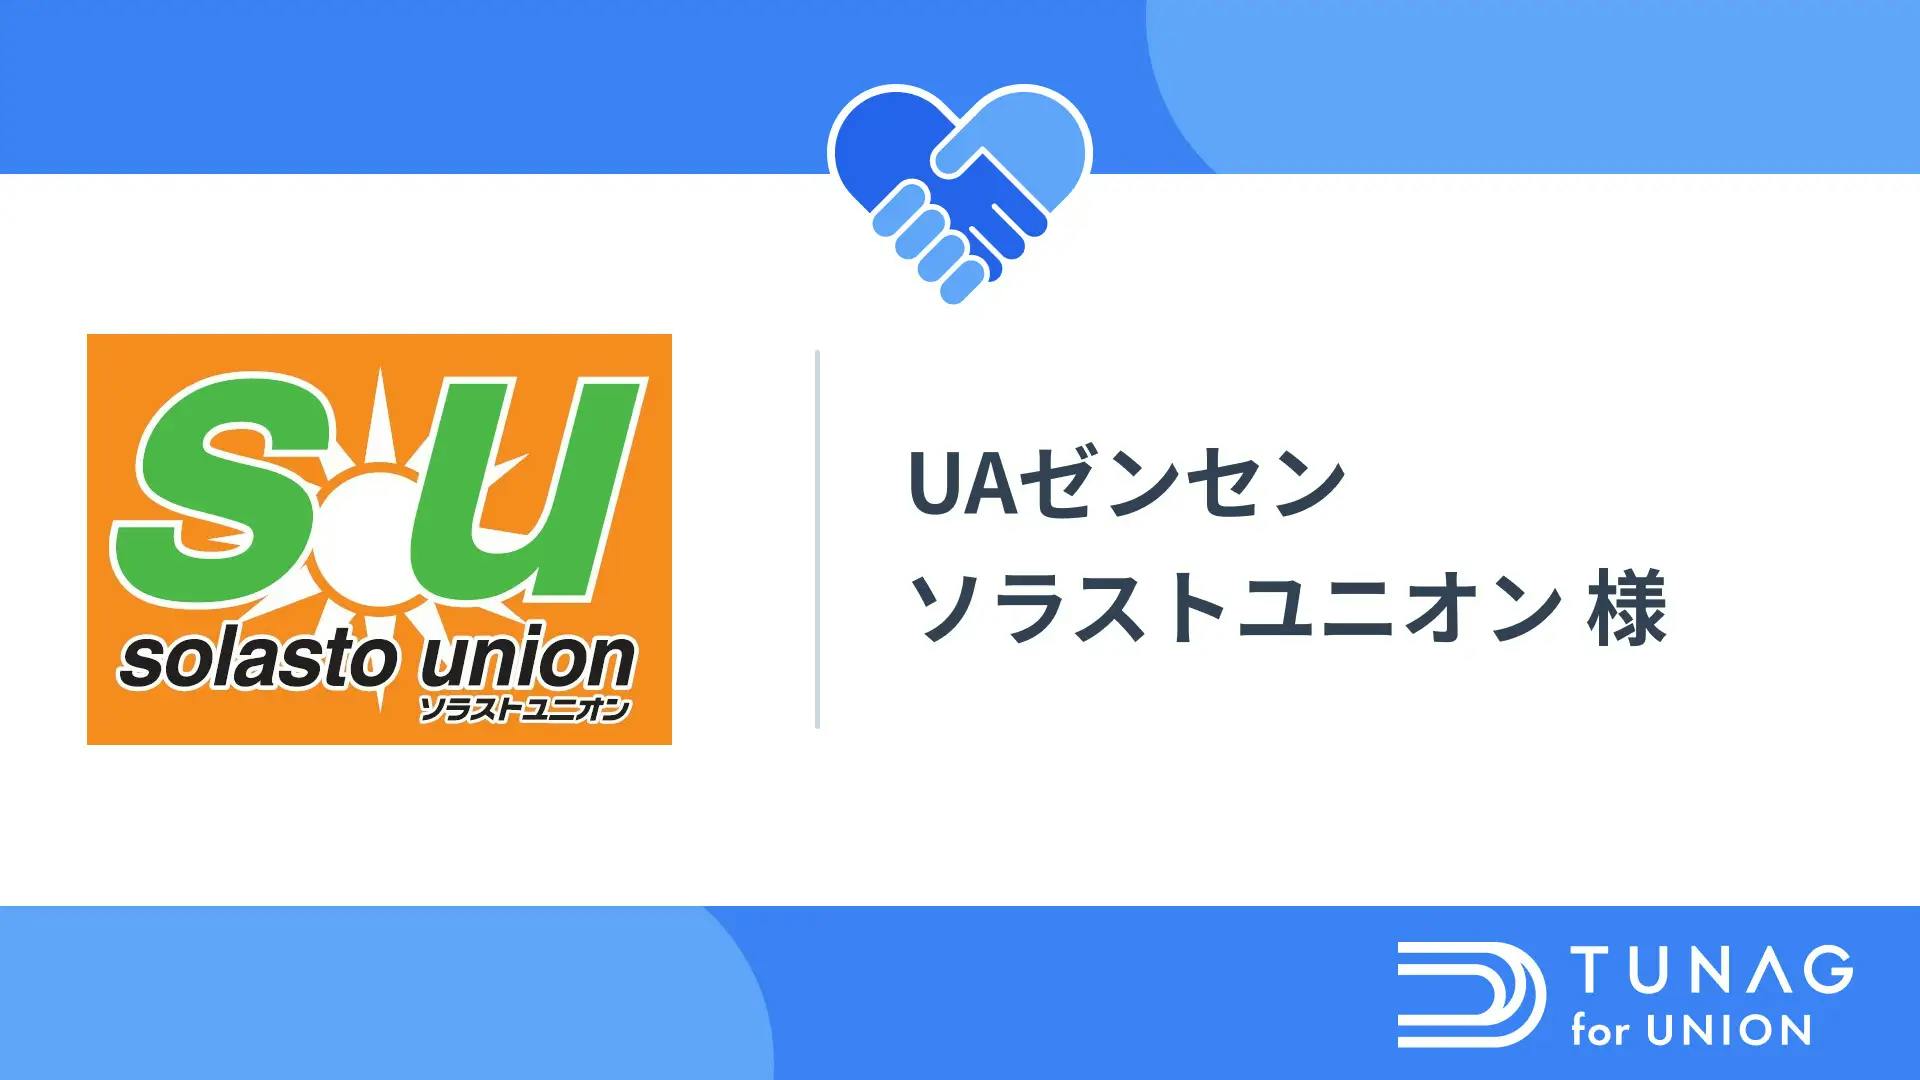 ソラストユニオンがTUNAG for UNIONを導入！効率的な情報発信で、全員参加の組合活動へ